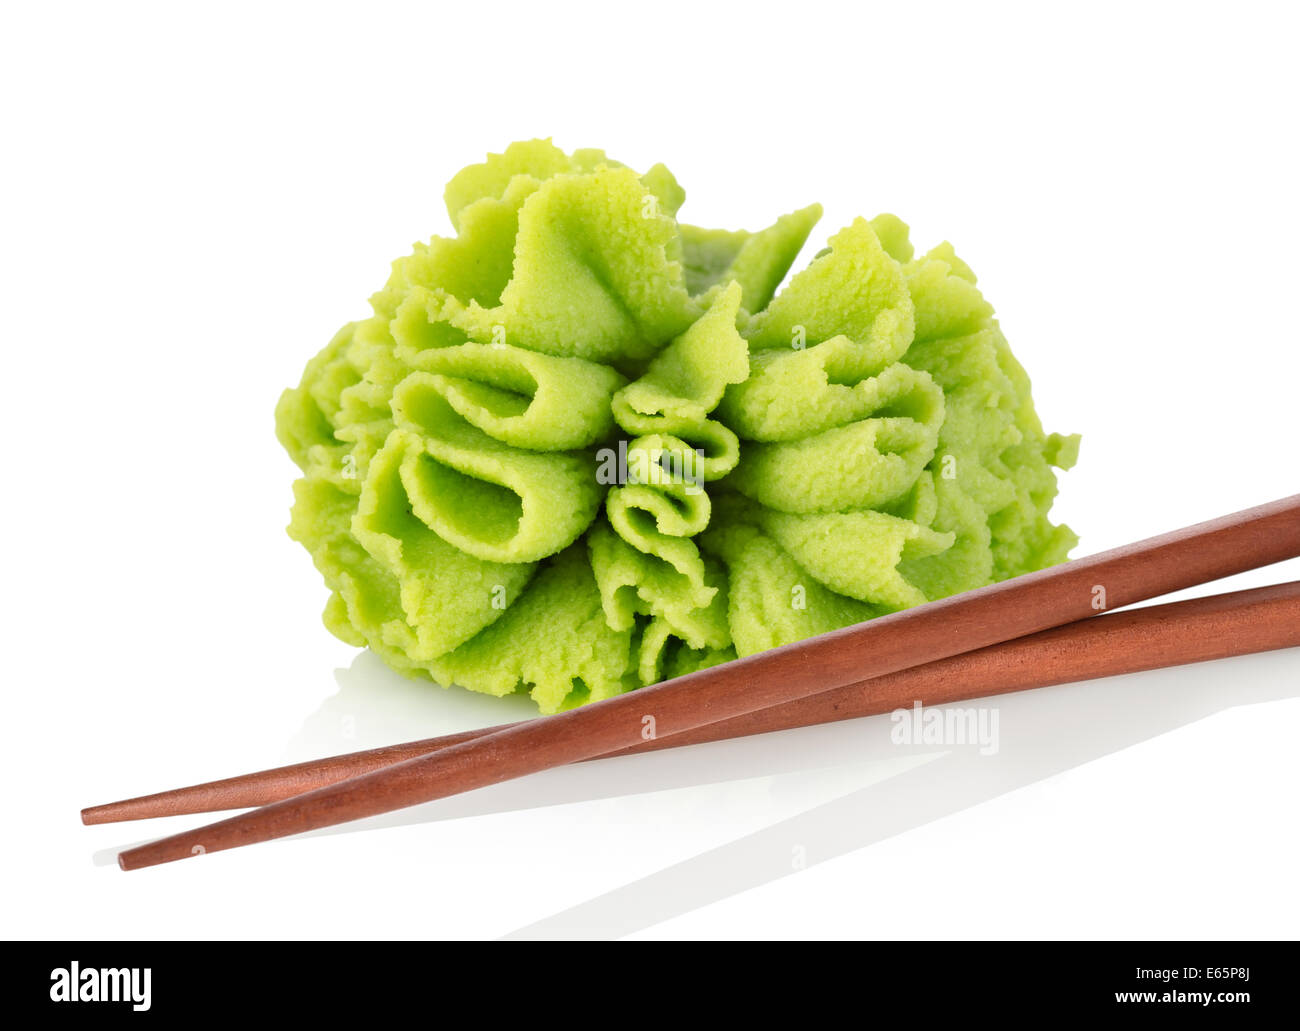 Wasabi seasoning isolated on a white background Stock Photo